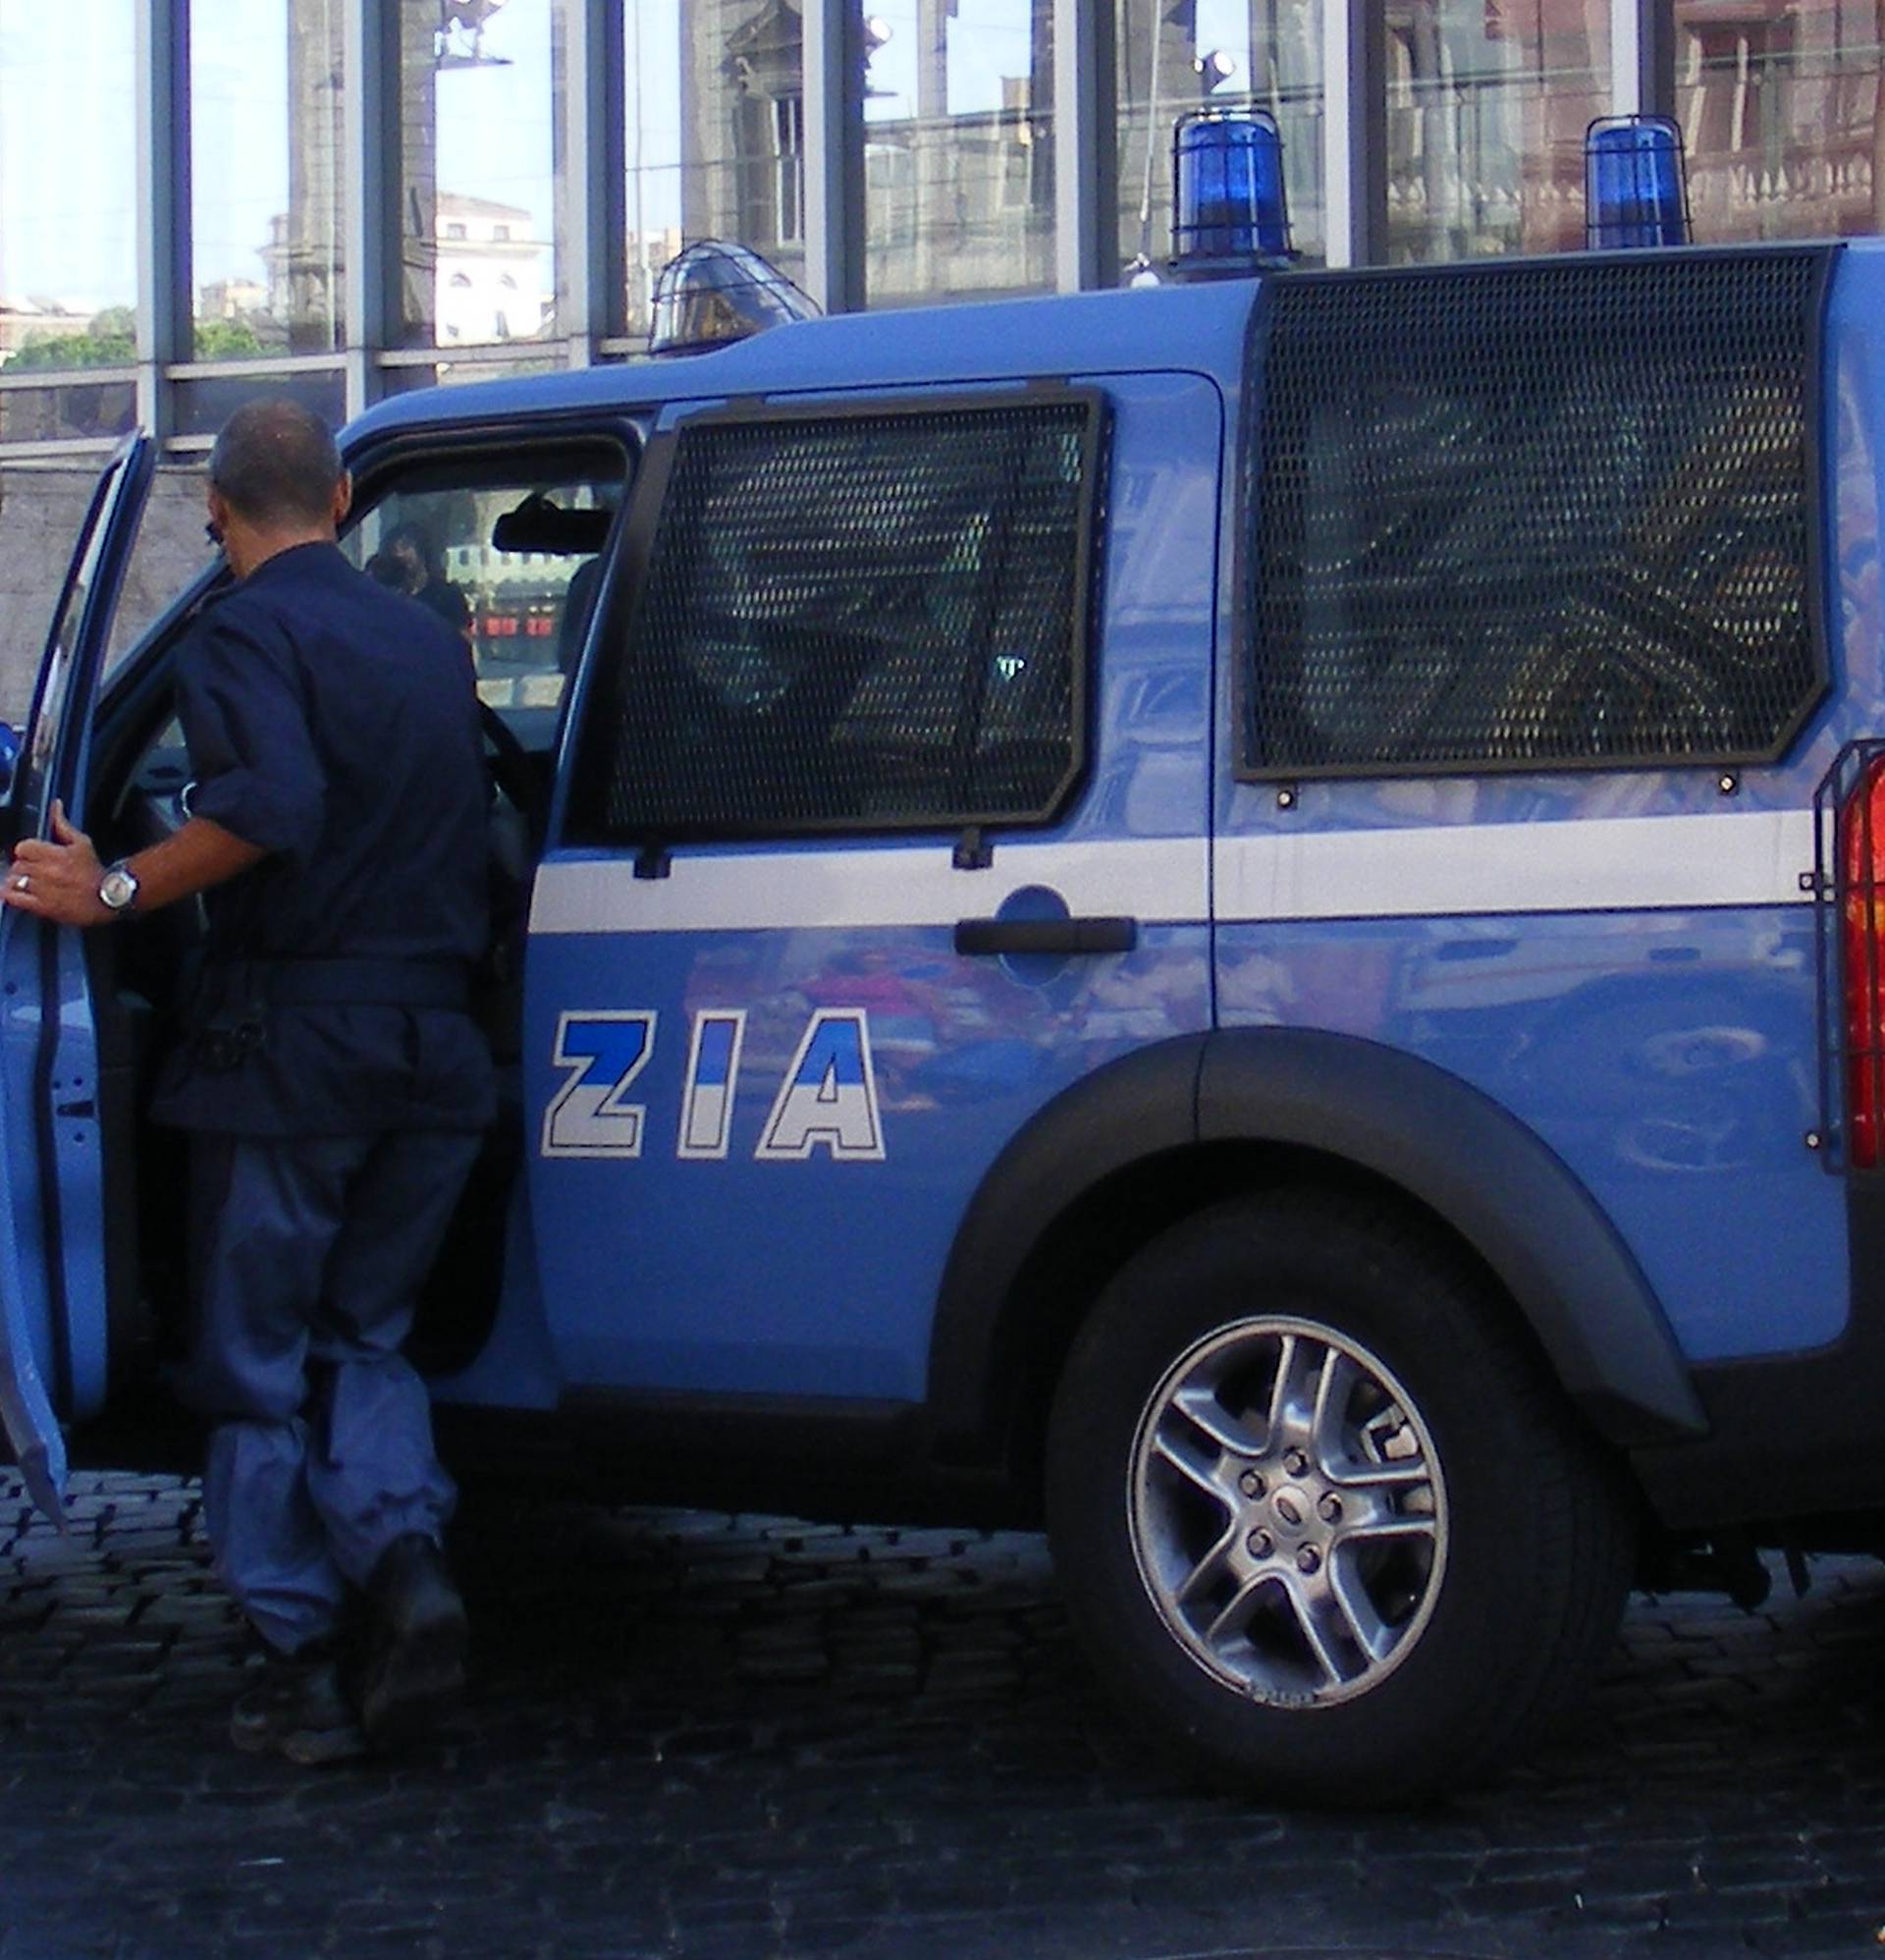 Uhićen opasni mafijaš povezan s organizacijom Cosa Nostra